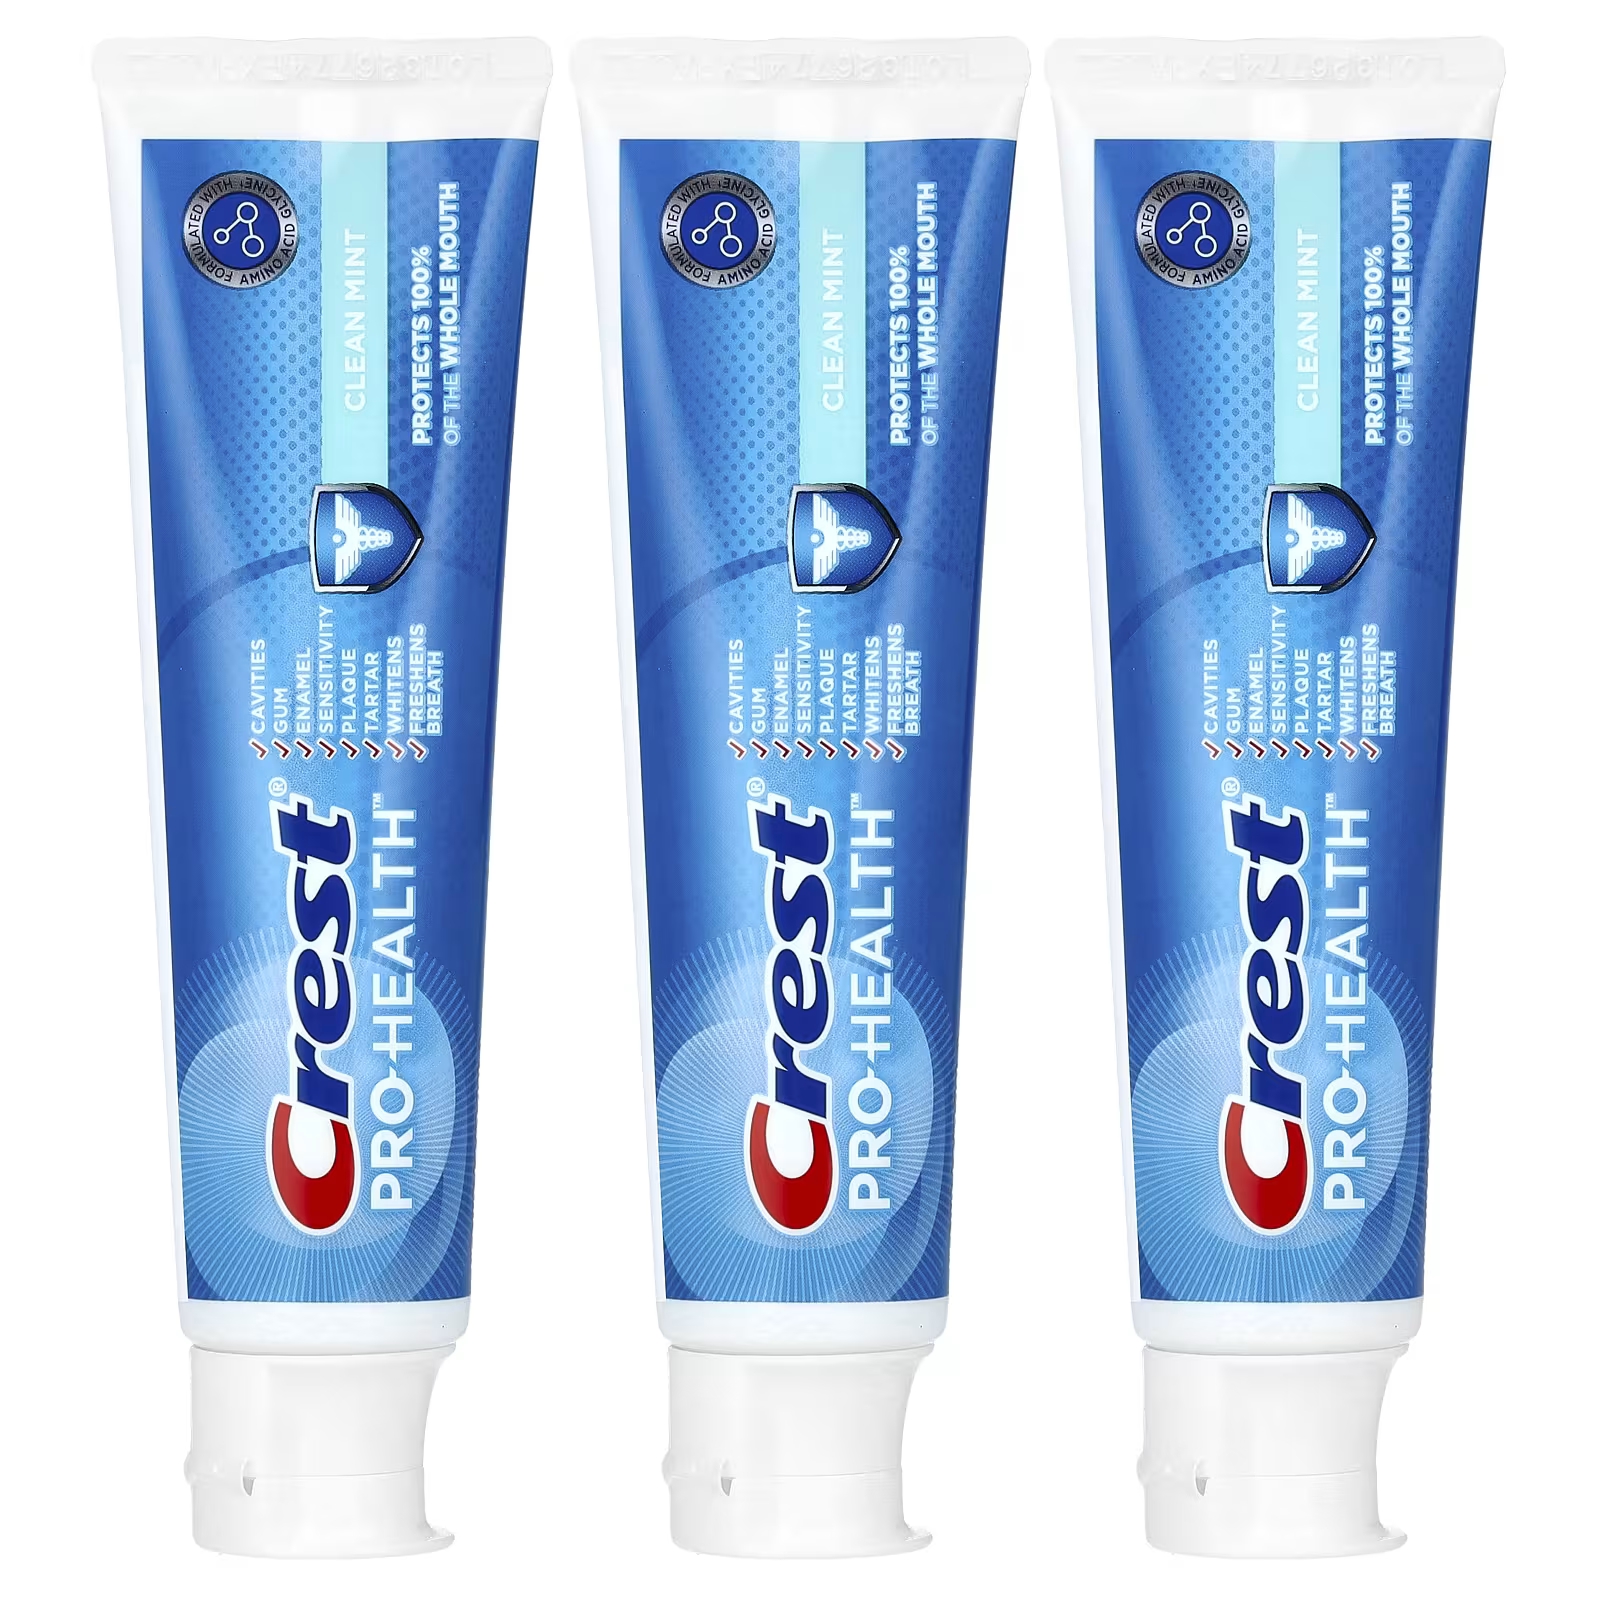 Зубная паста Crest Pro-Health CLean Mint с фтором crest pro health advanced gum restore зубная паста с фтором отбеливающая 104 г 3 7 унции